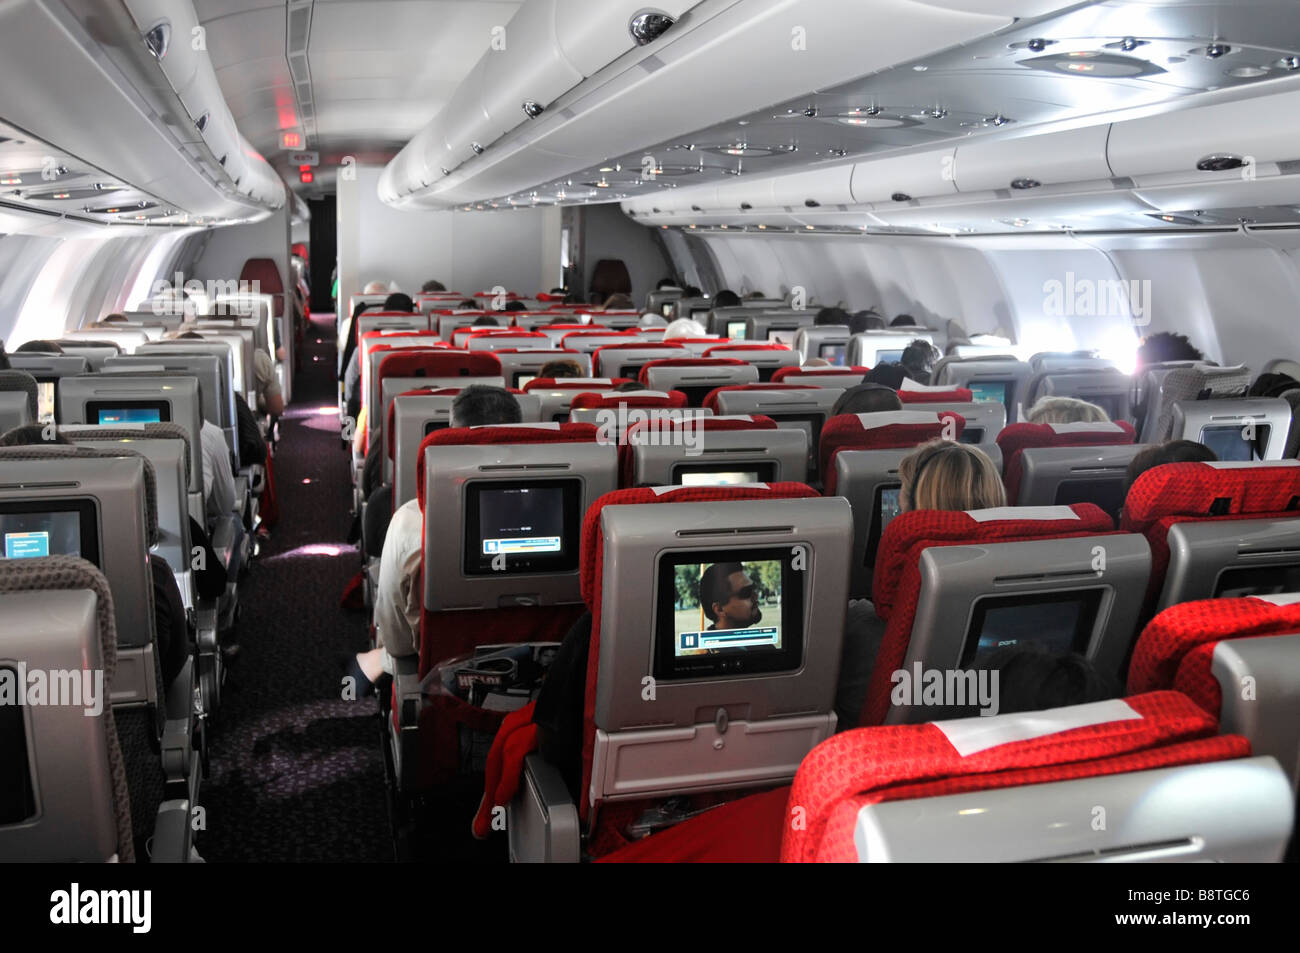 Voyage en avion intérieur Virgin Atlantic Airbus avion avion cabine passagers à bord de l'écran de cinéma de divertissement de télévision à l'arrière des sièges Banque D'Images